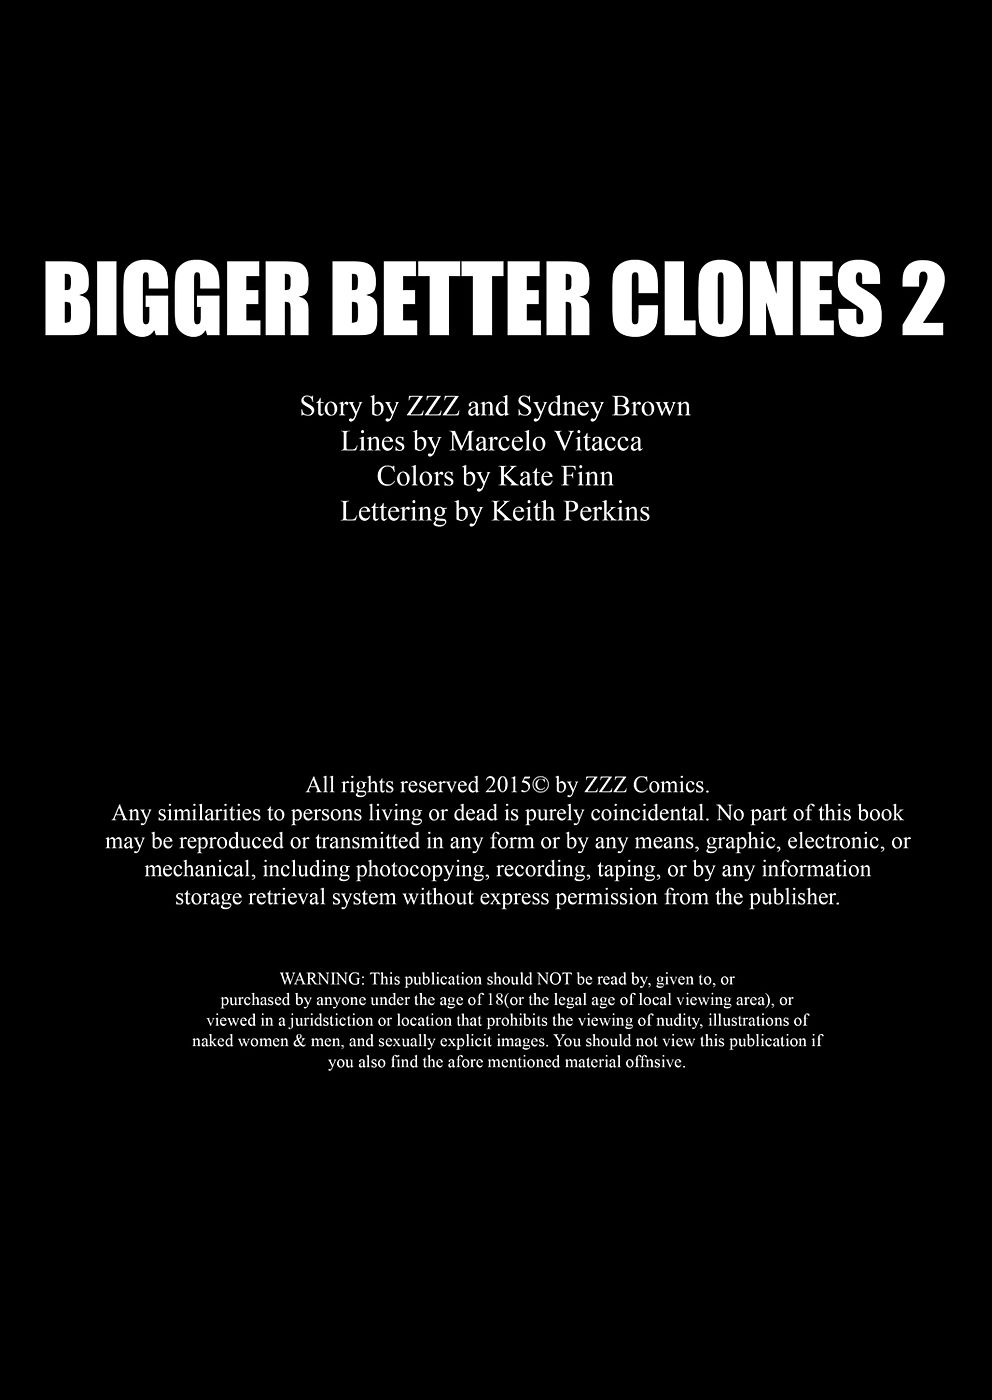 maior Melhor clones 02 zzz